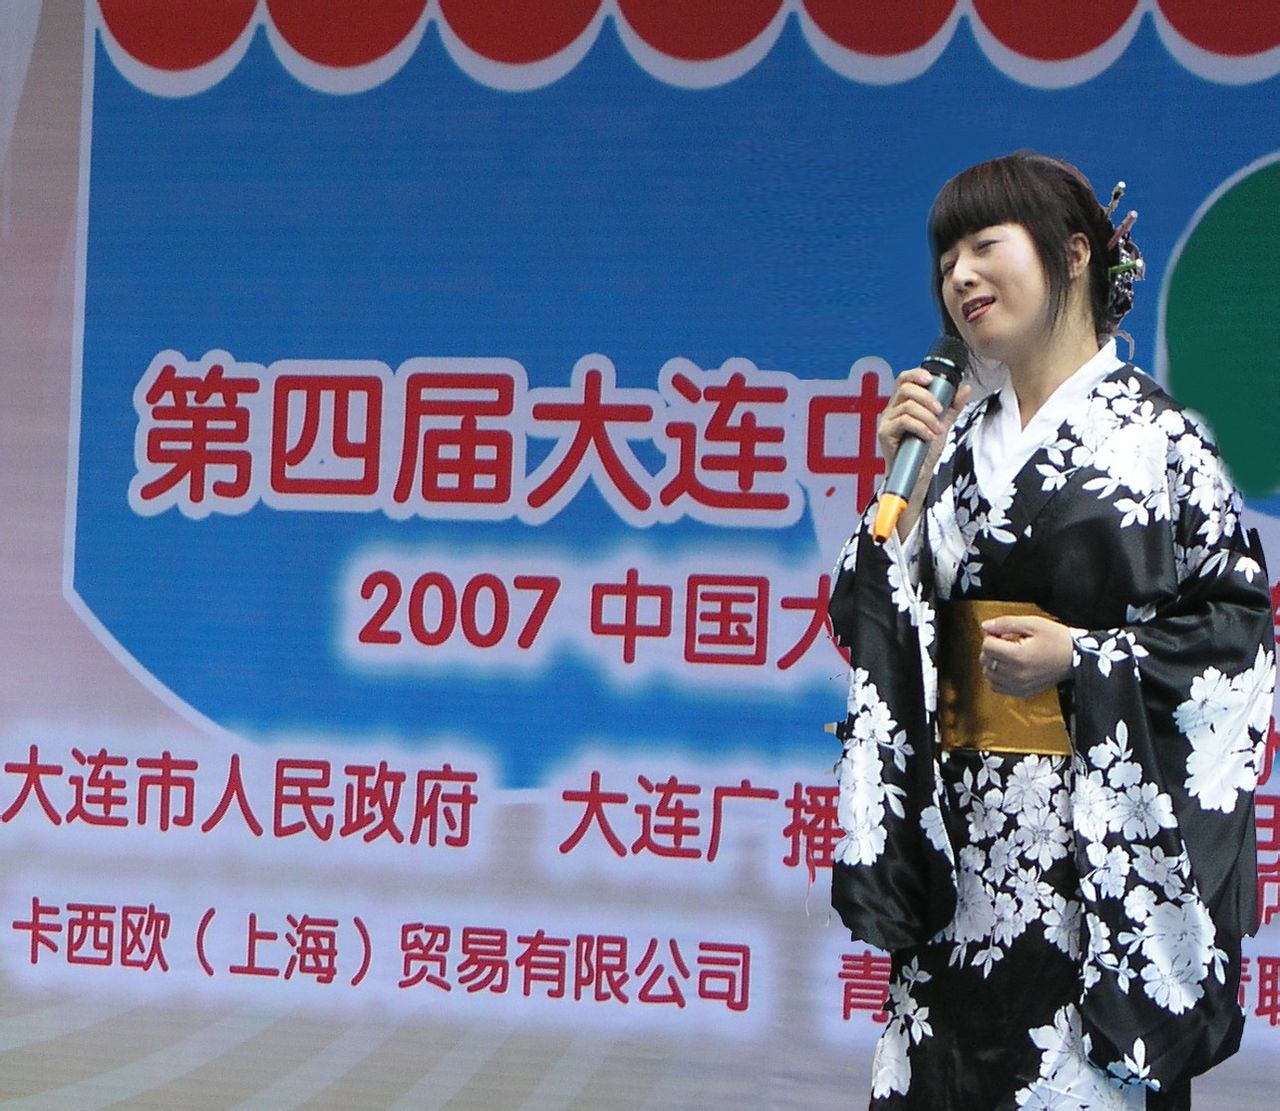 2007年紫竹英子參加中日歌手擂台賽演出照